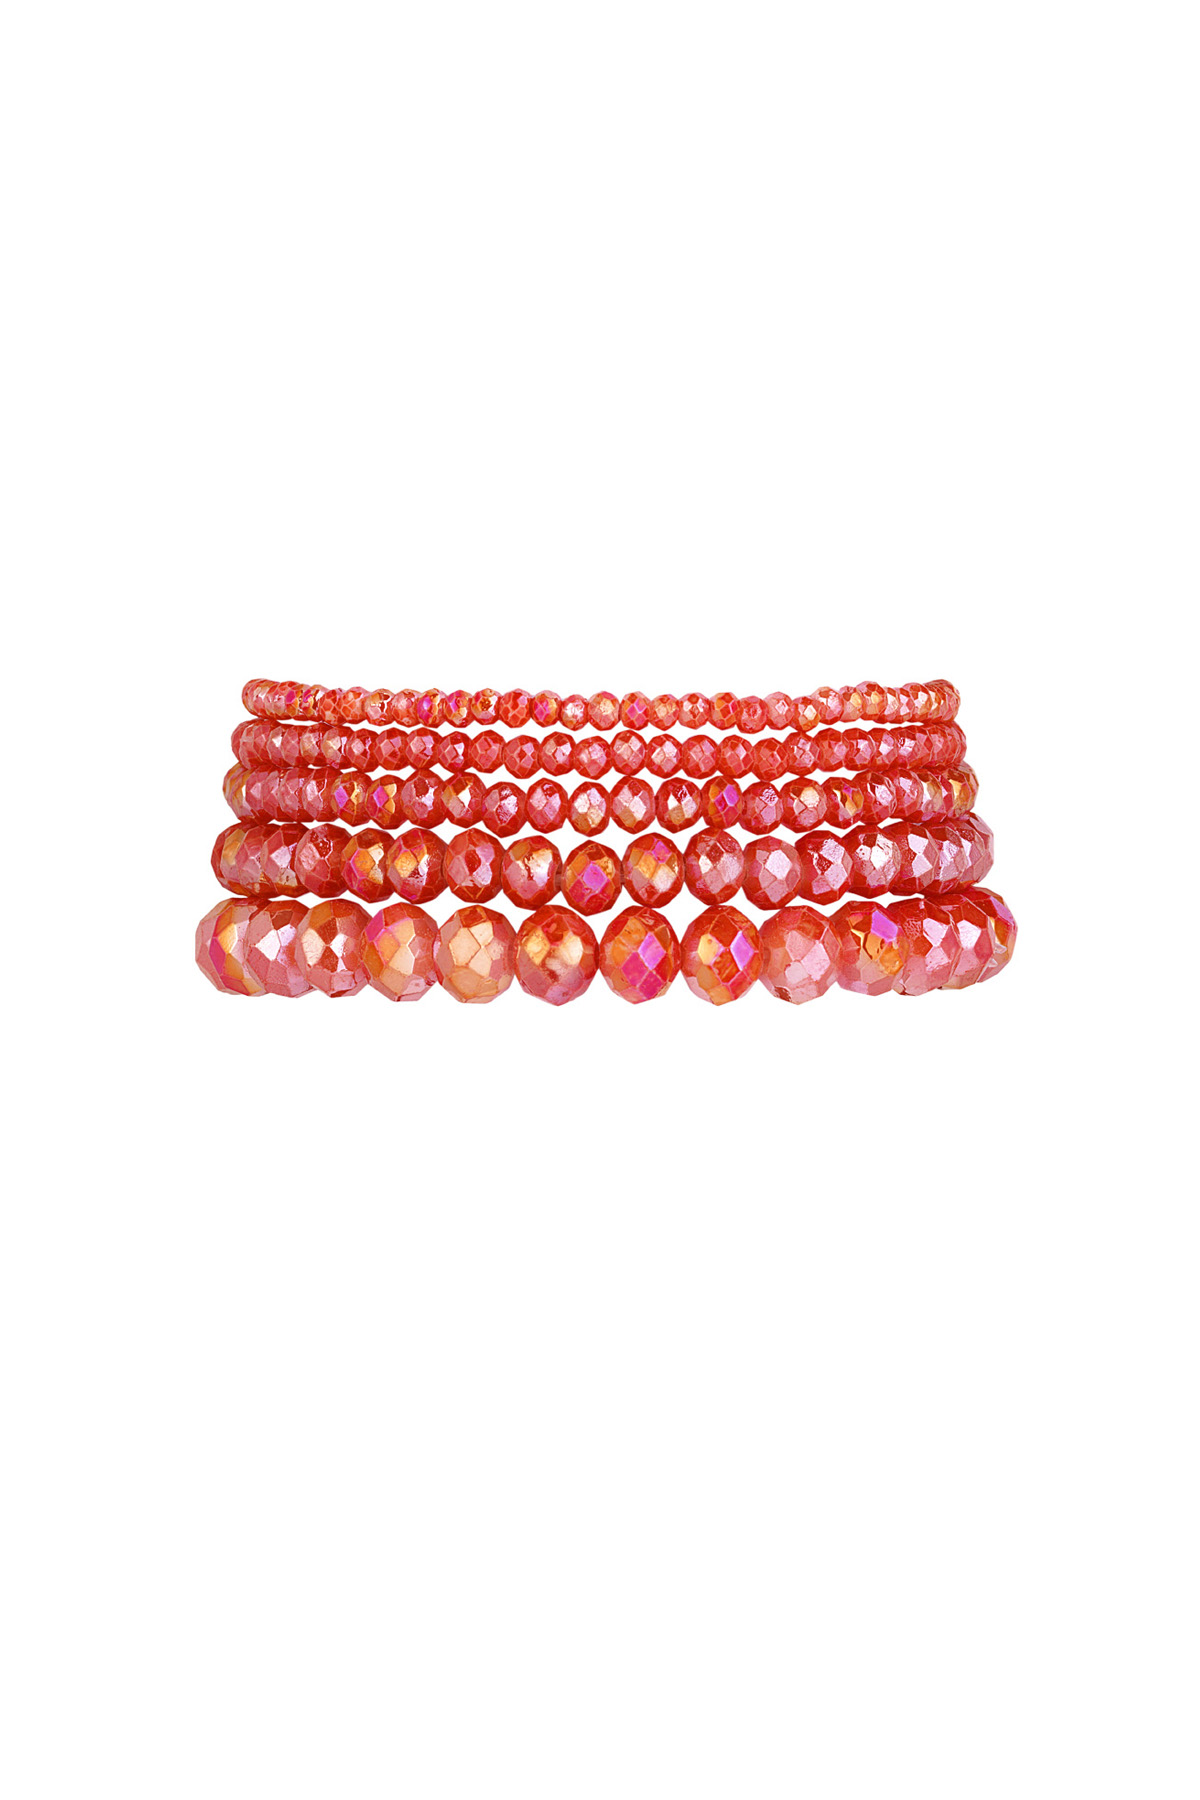 Set of 5 crystal bracelets - salmon